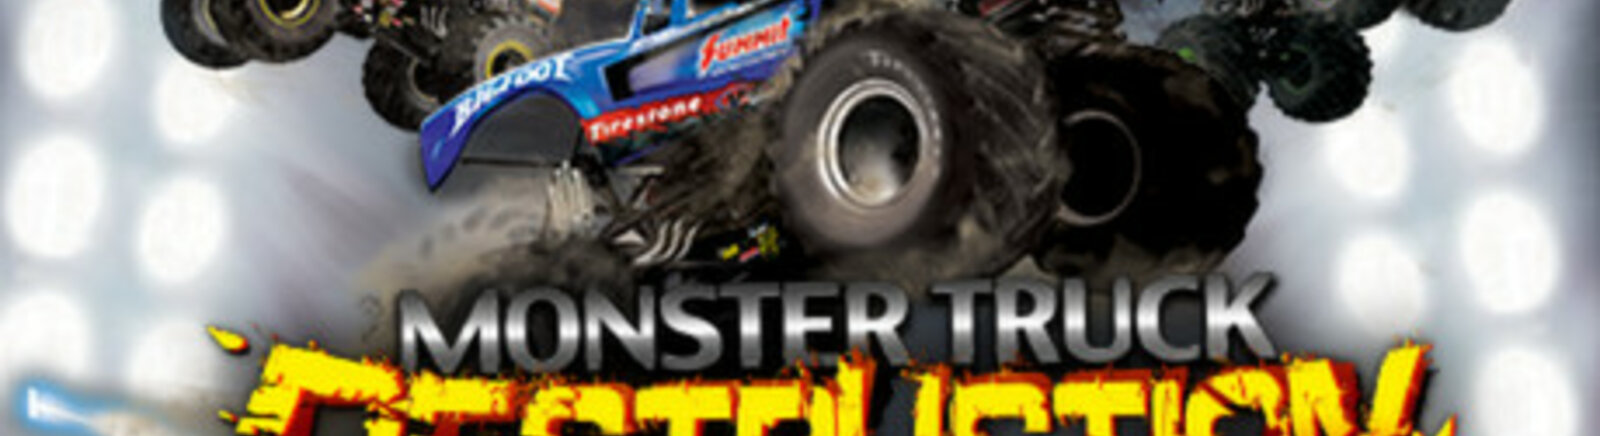 Дата выхода Monster Truck Destruction  на PC, iOS и Mac в России и во всем мире